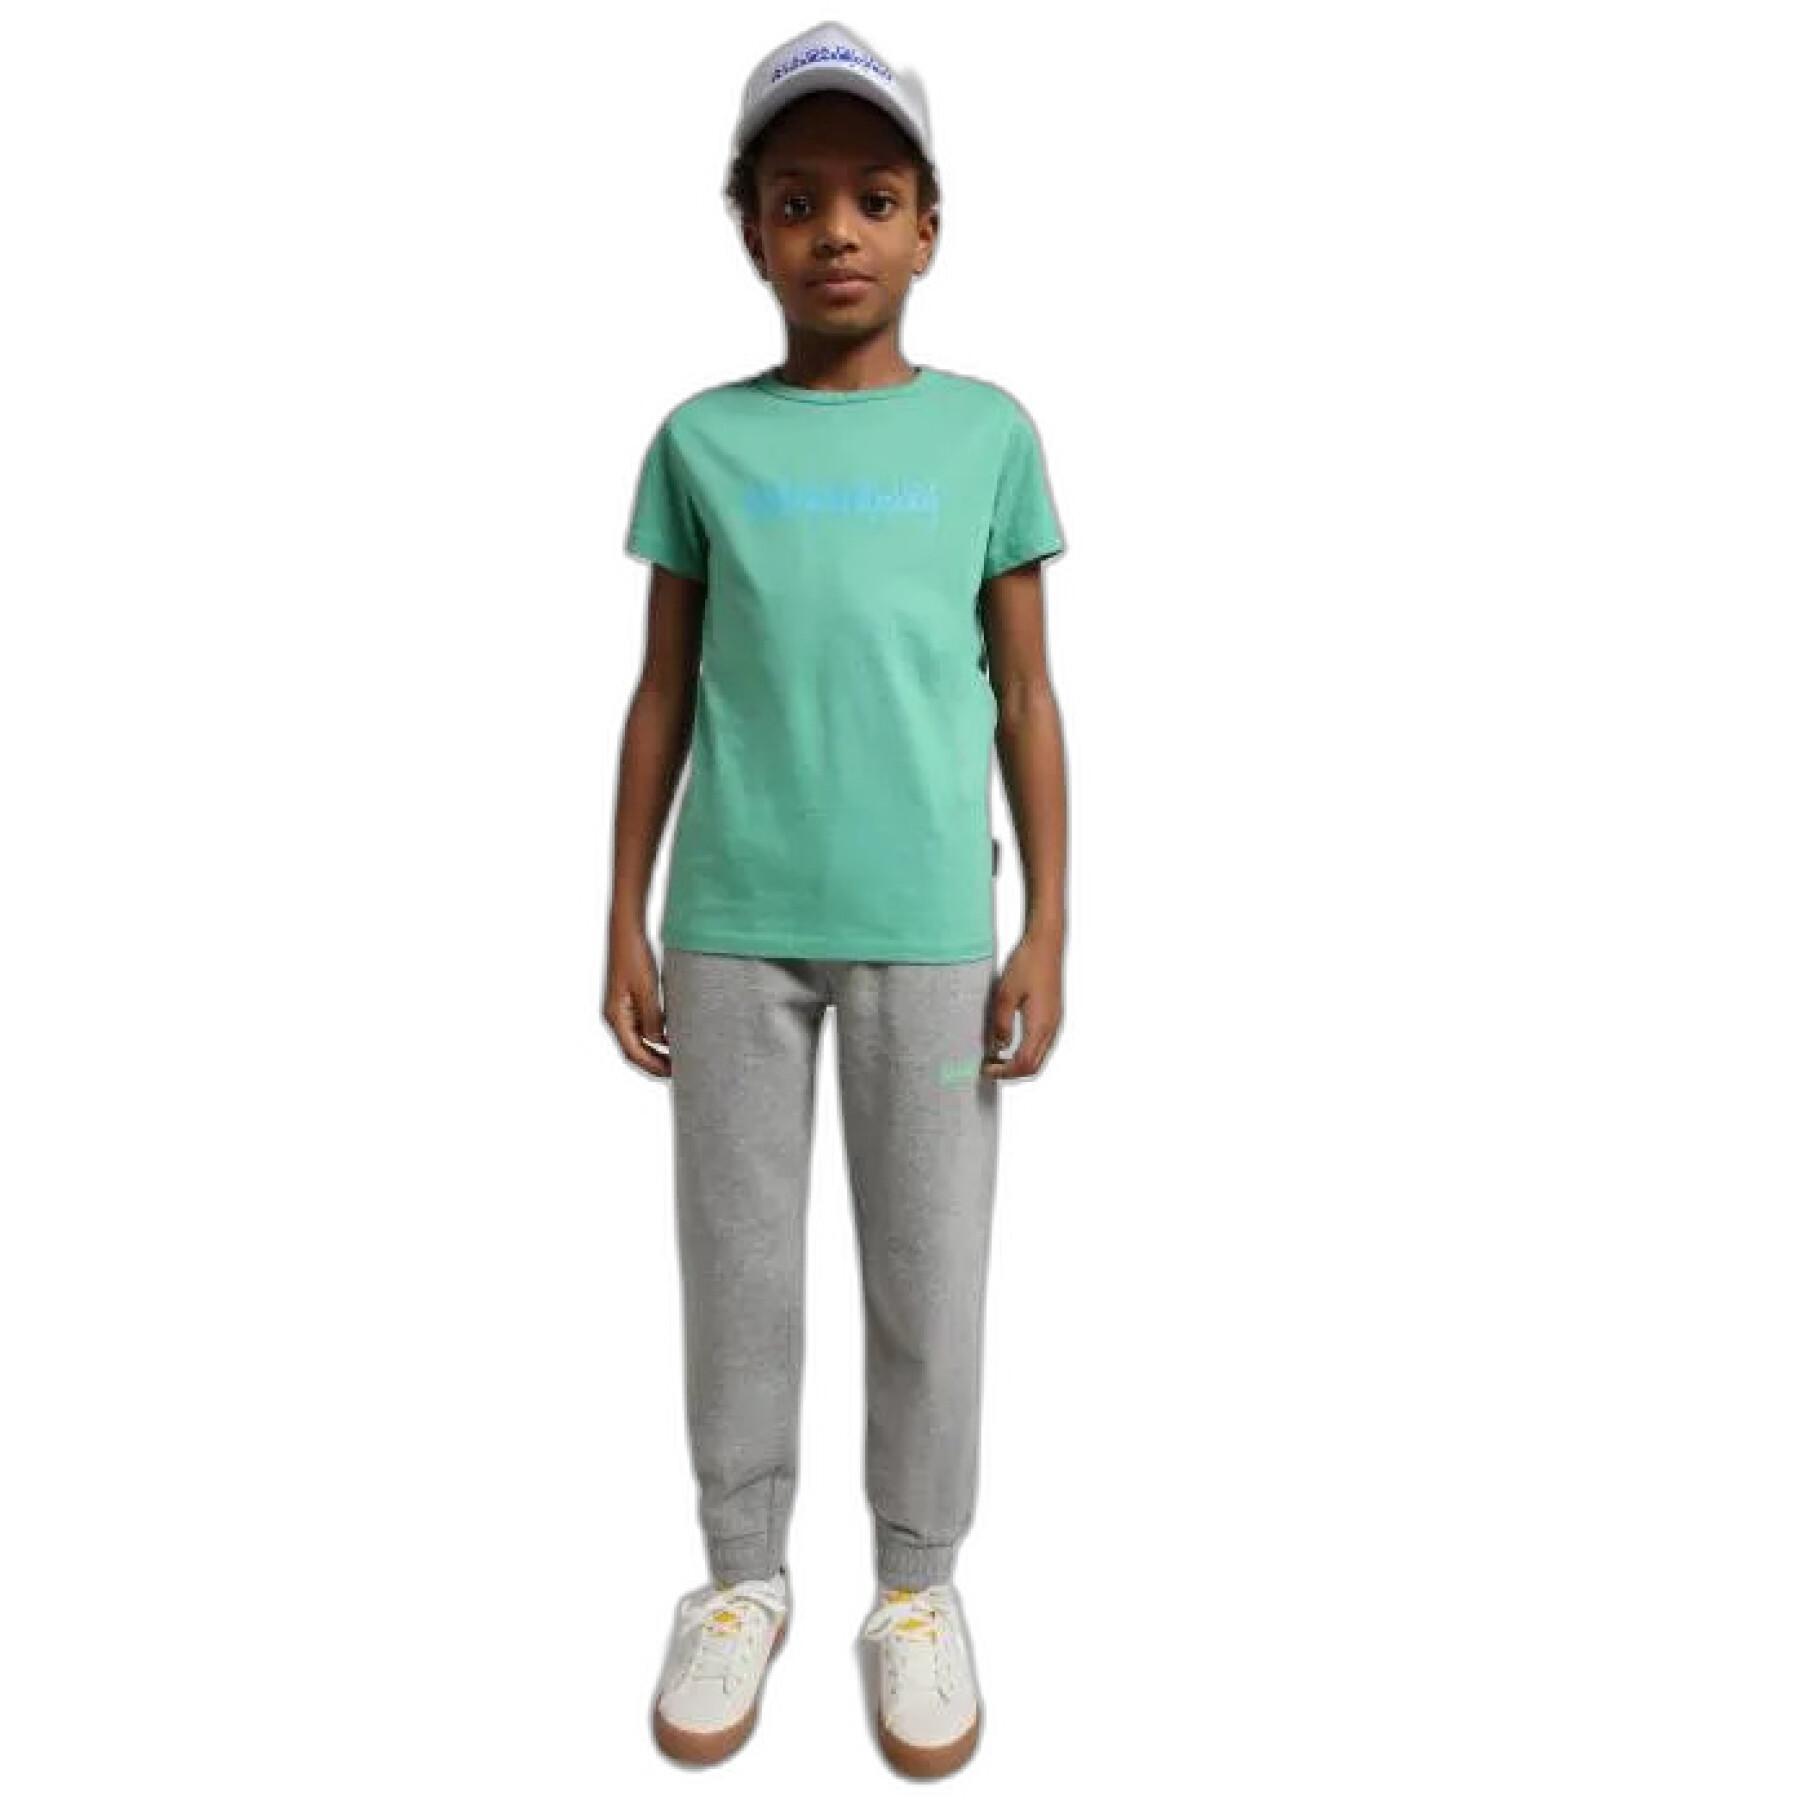 Children's jogging suit Napapijri M-Box